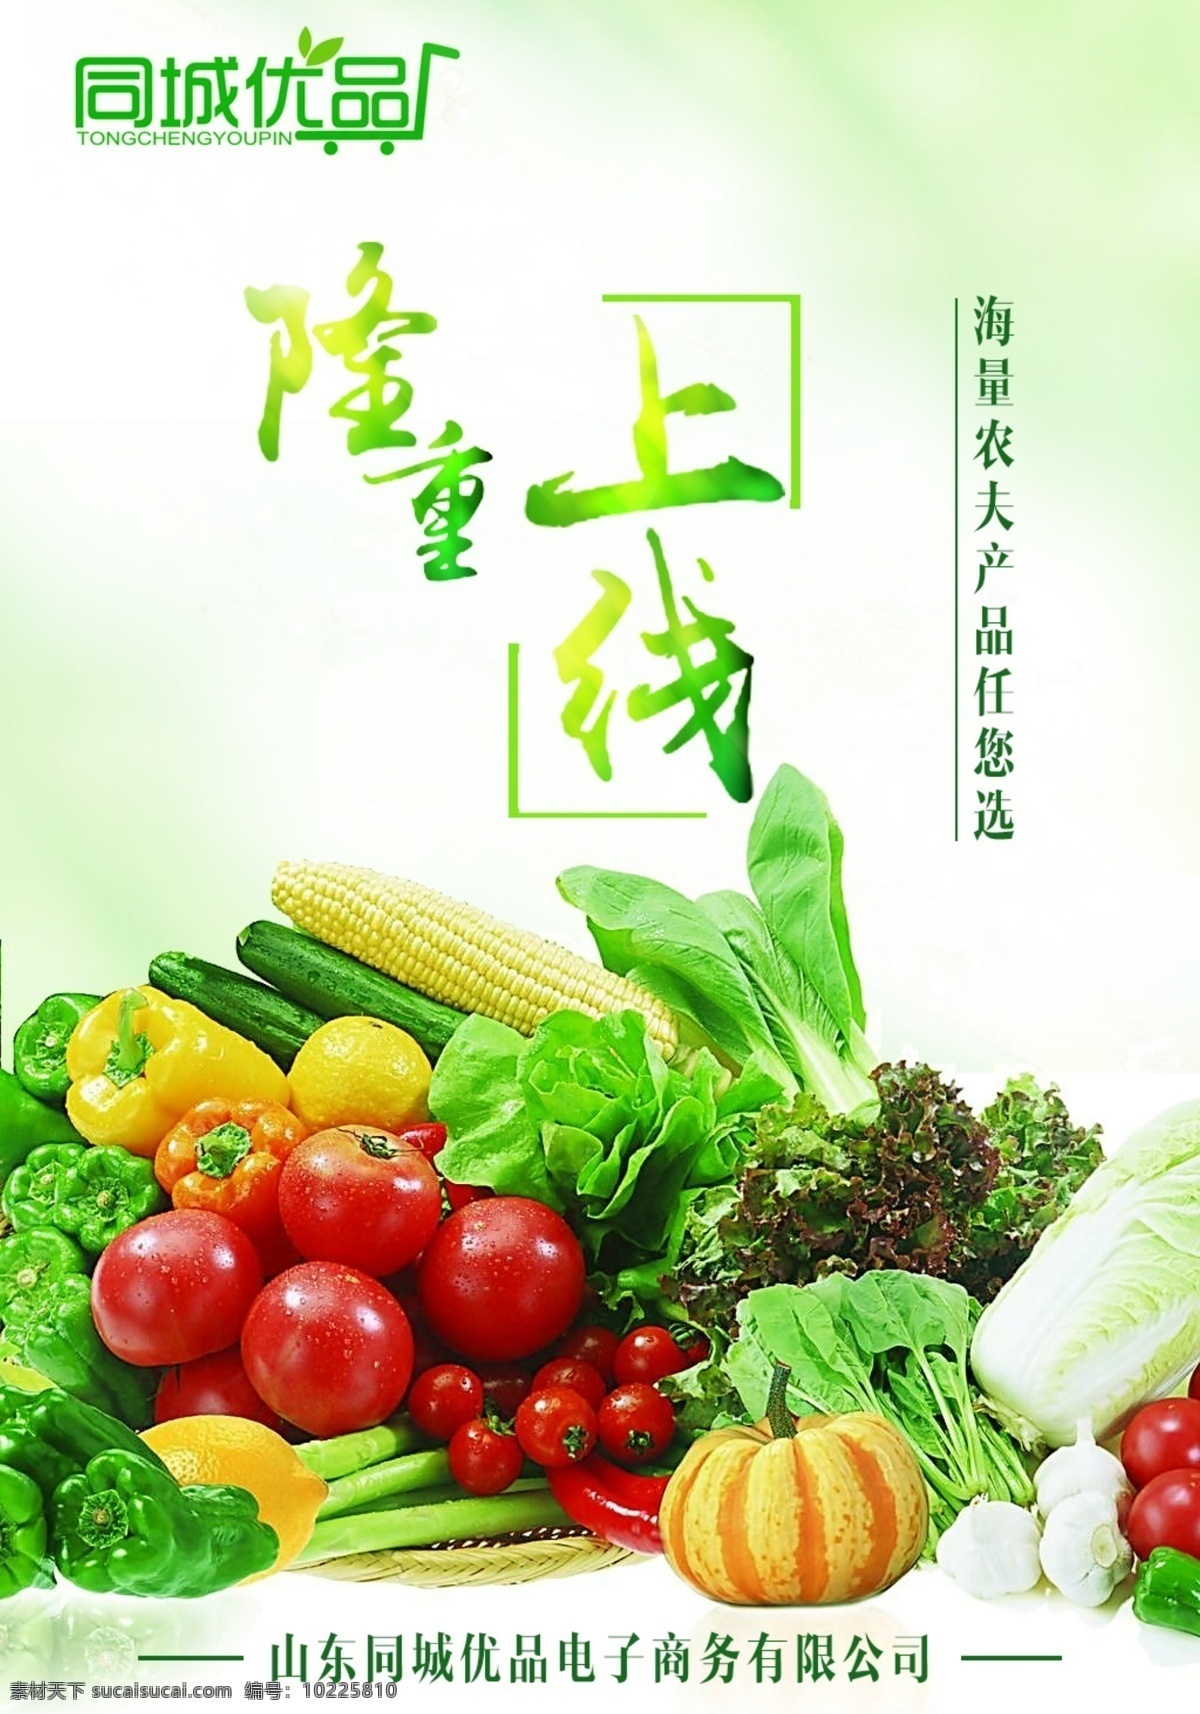 农副产品海报 果蔬 电商促销 新品上市 农副产品 生鲜